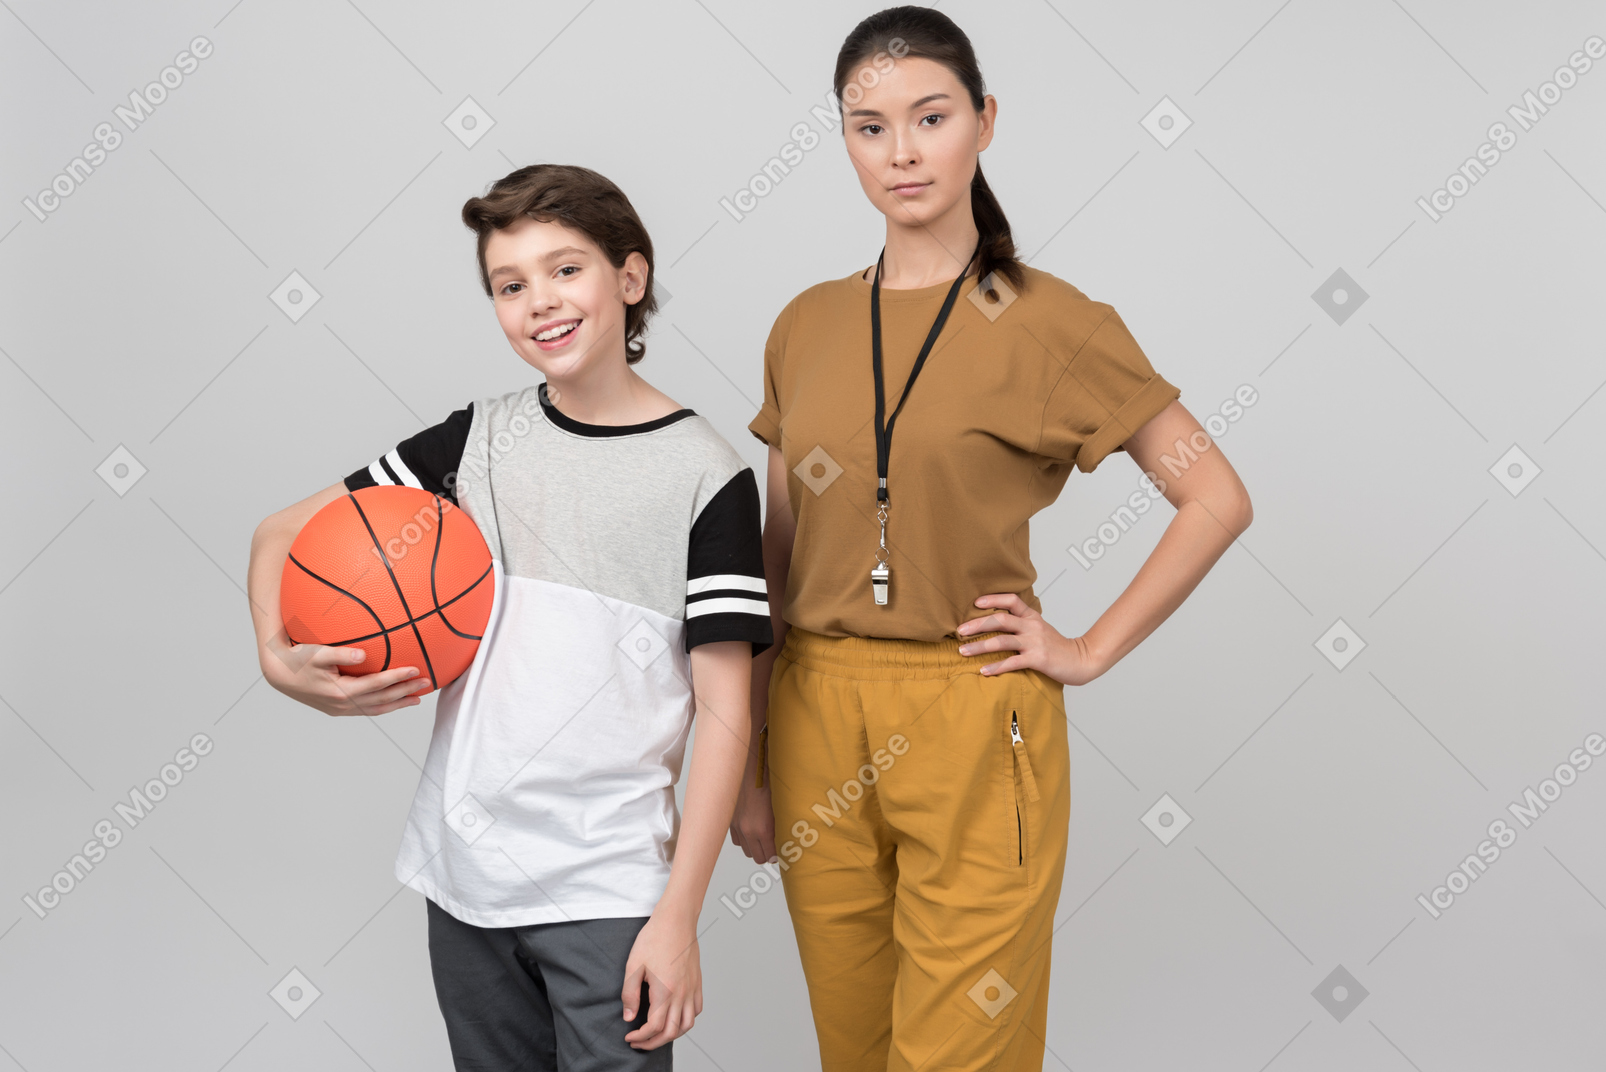 Professor de pe e seu aluno segurando uma bola de basquete